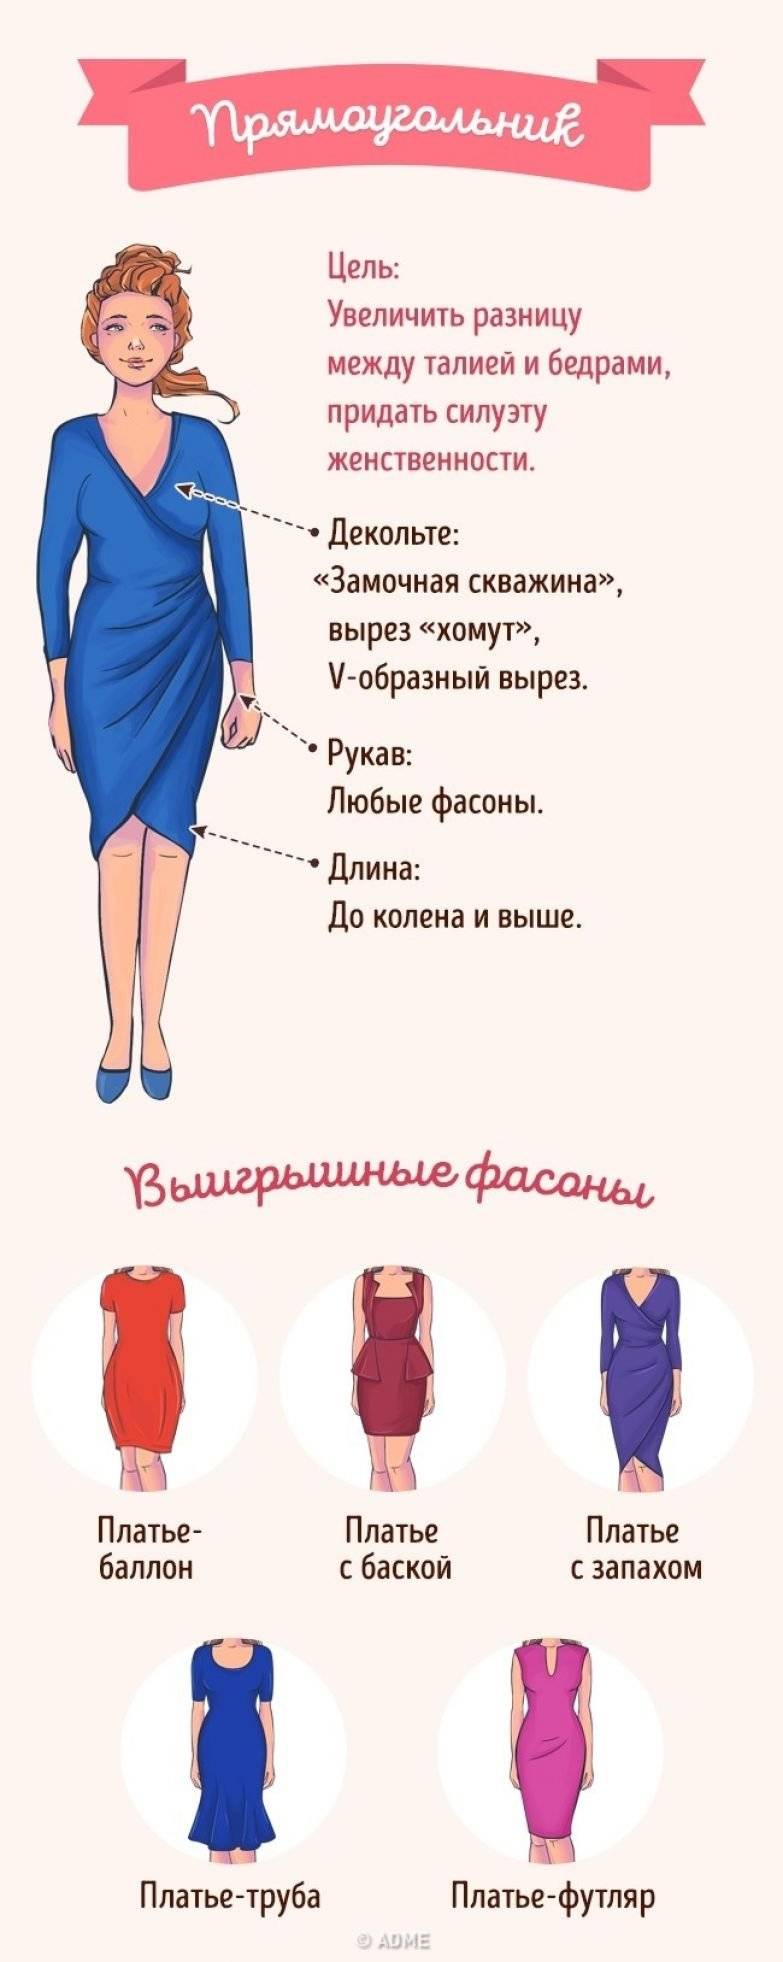 Стильные и красивые платья-футляр 2021 года | ladycharm.net - женский онлайн журнал